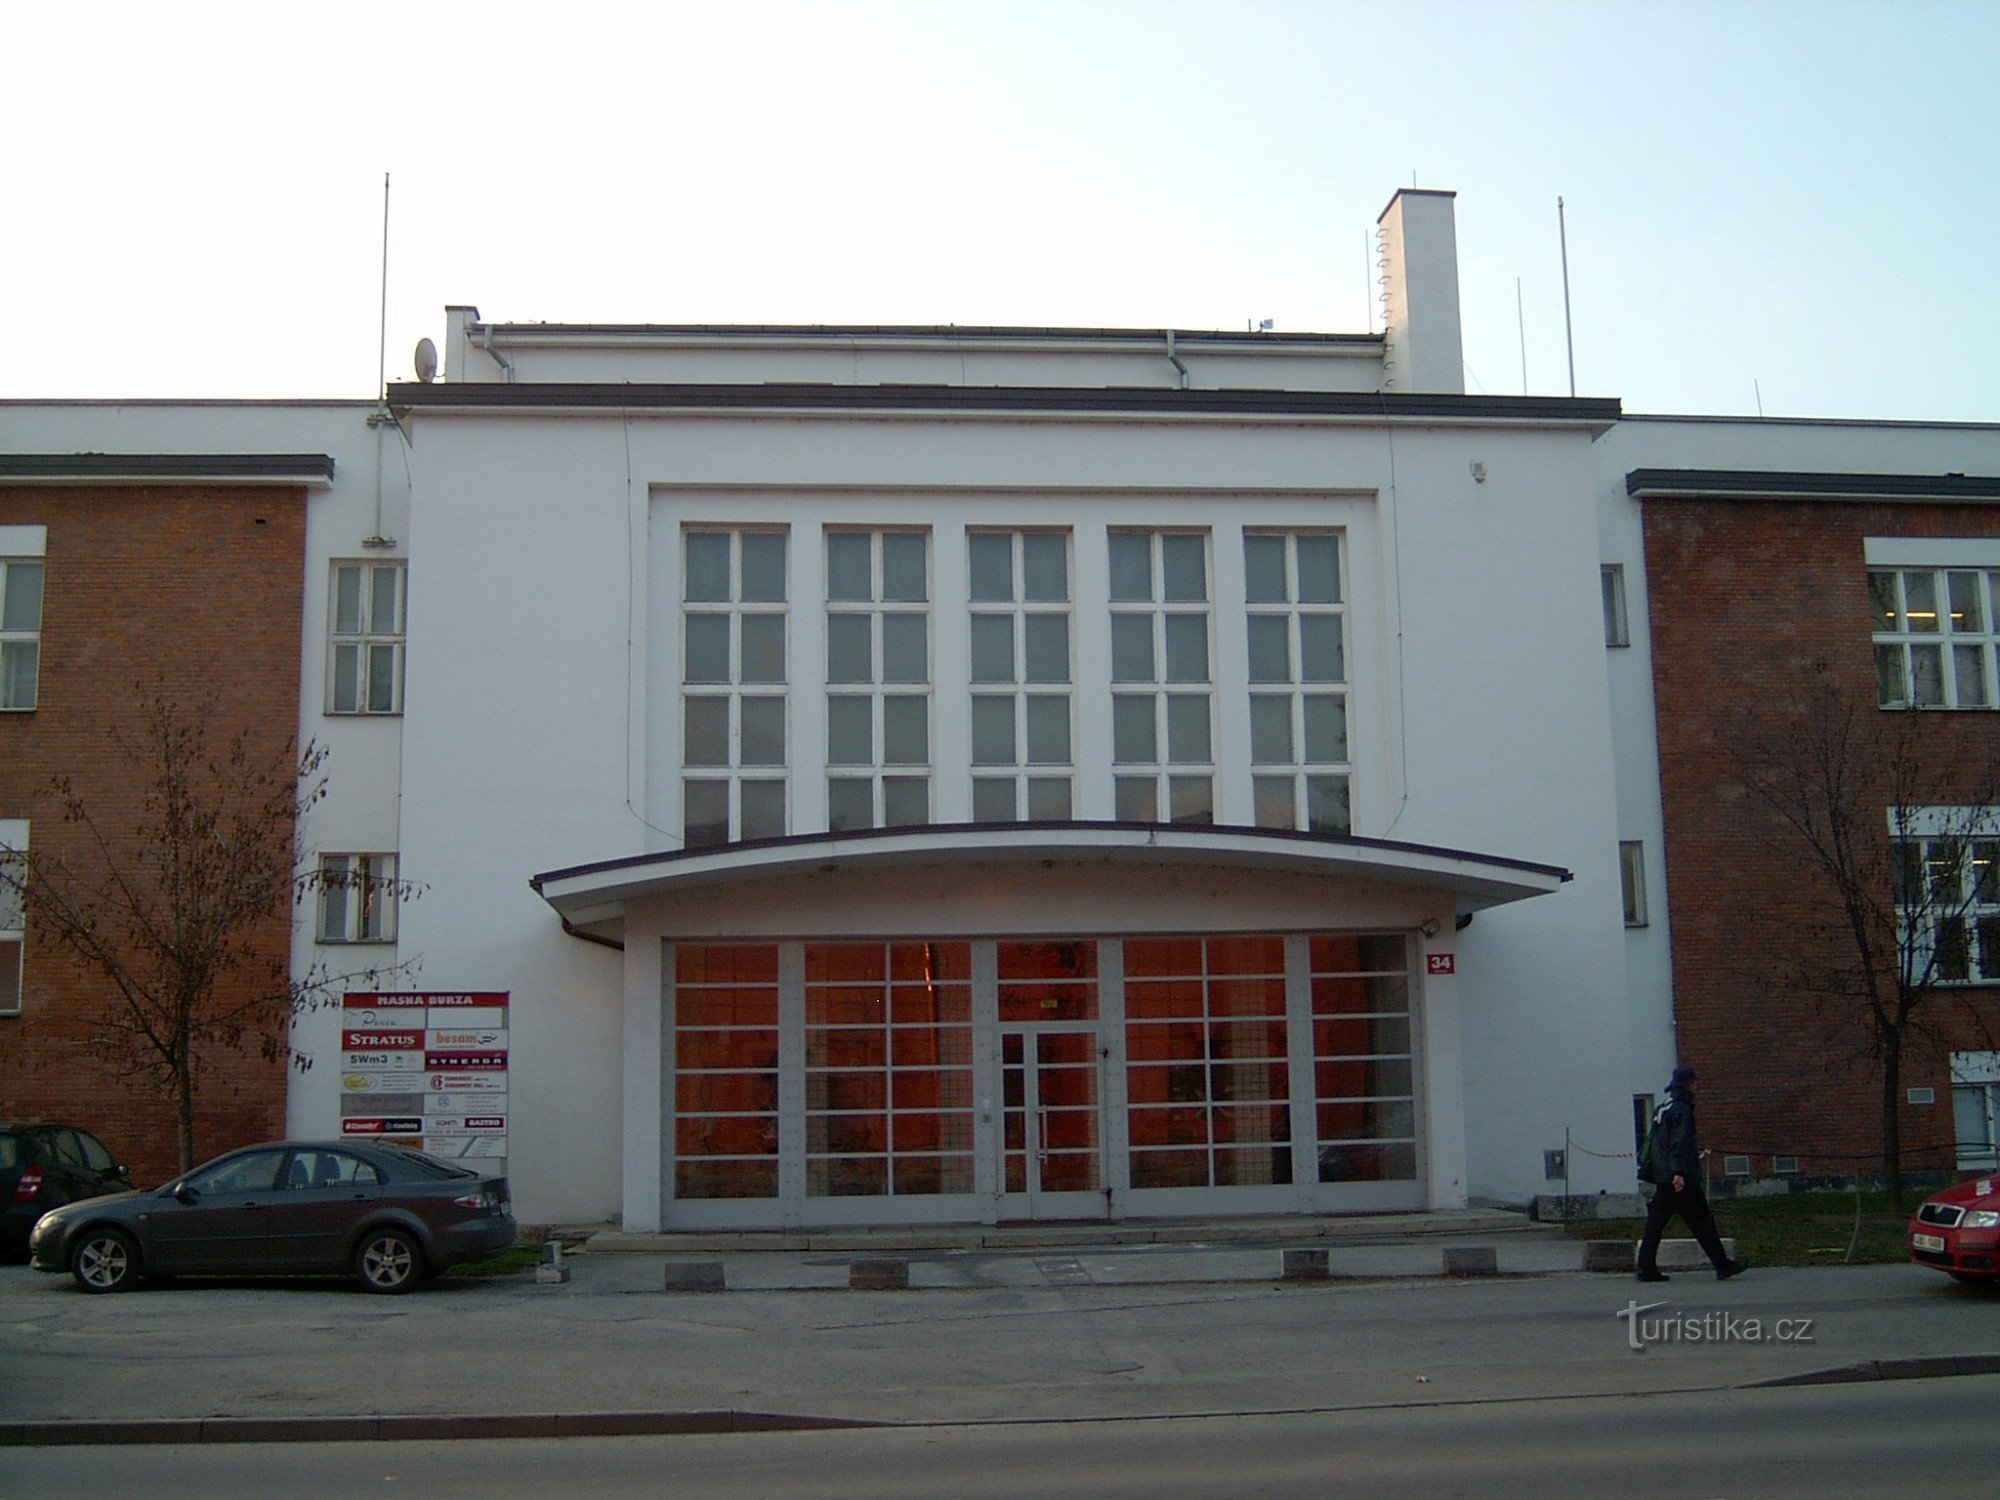 Fleischbörse in Brünn, Eingang von der Masná-Straße